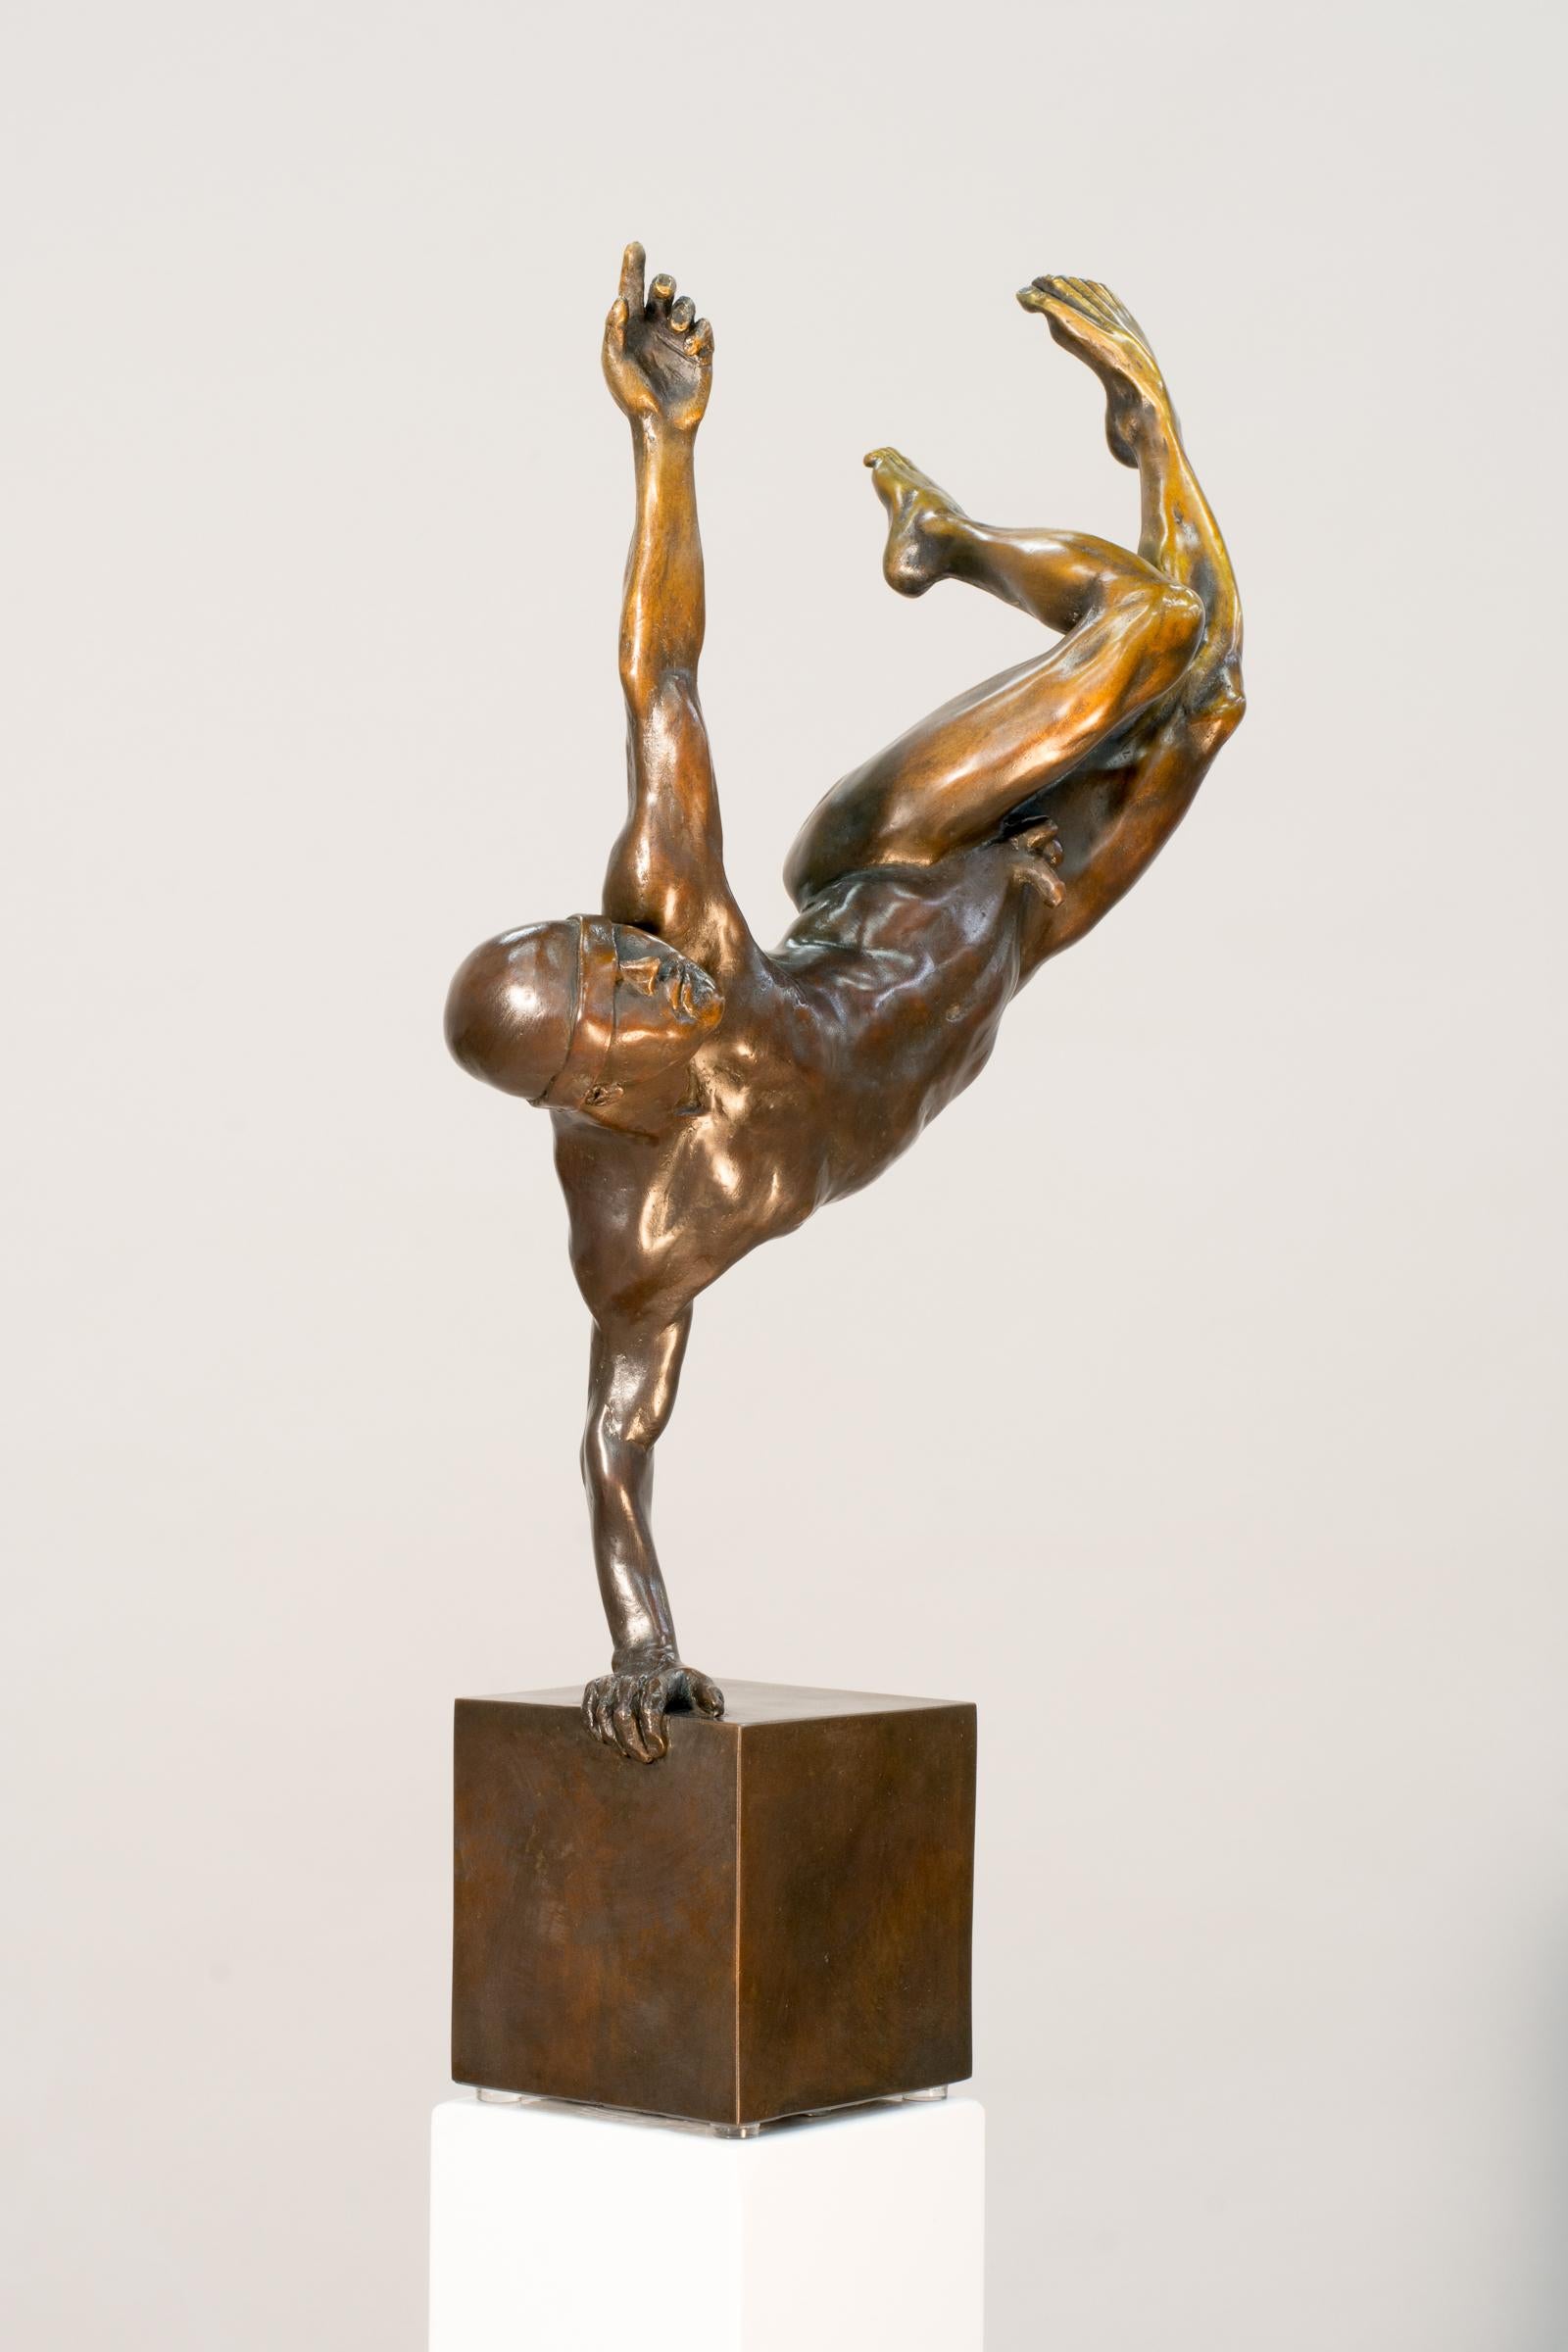 Yearning 1/9 – männlich, nackt, figurativ, statuette, Bronzeskulptur (Zeitgenössisch), Sculpture, von W.W. Hung